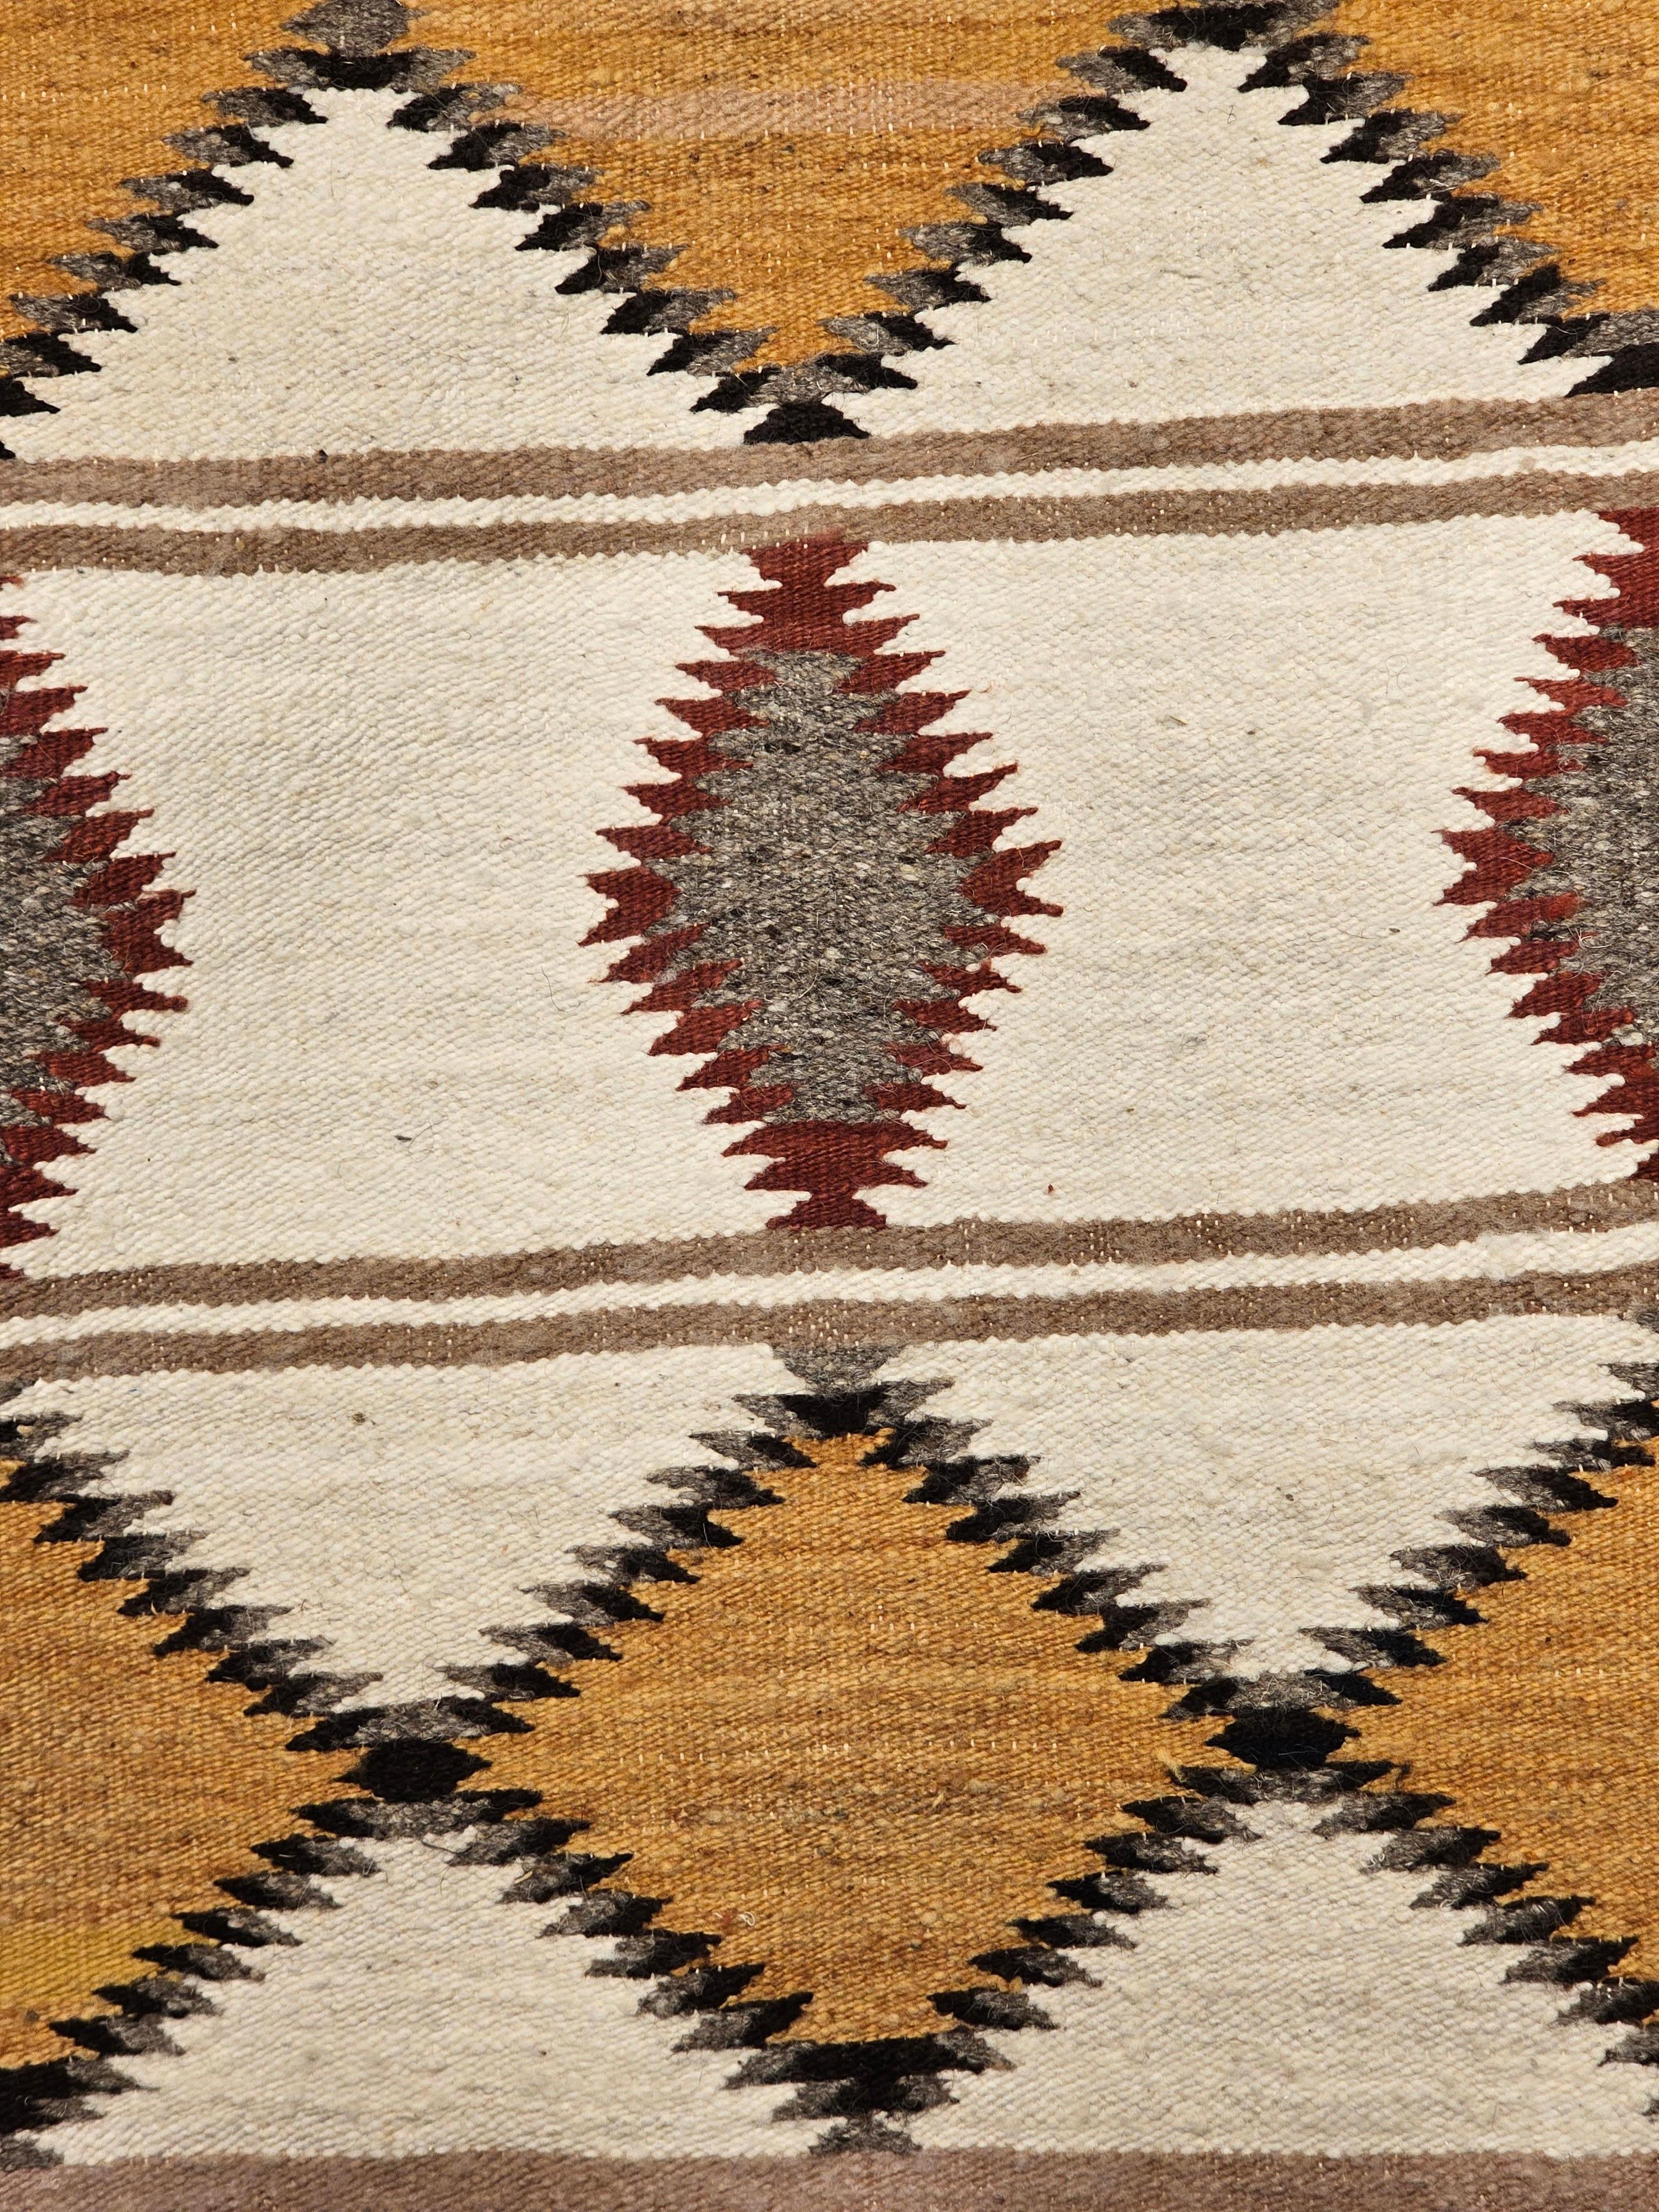 native american carpet